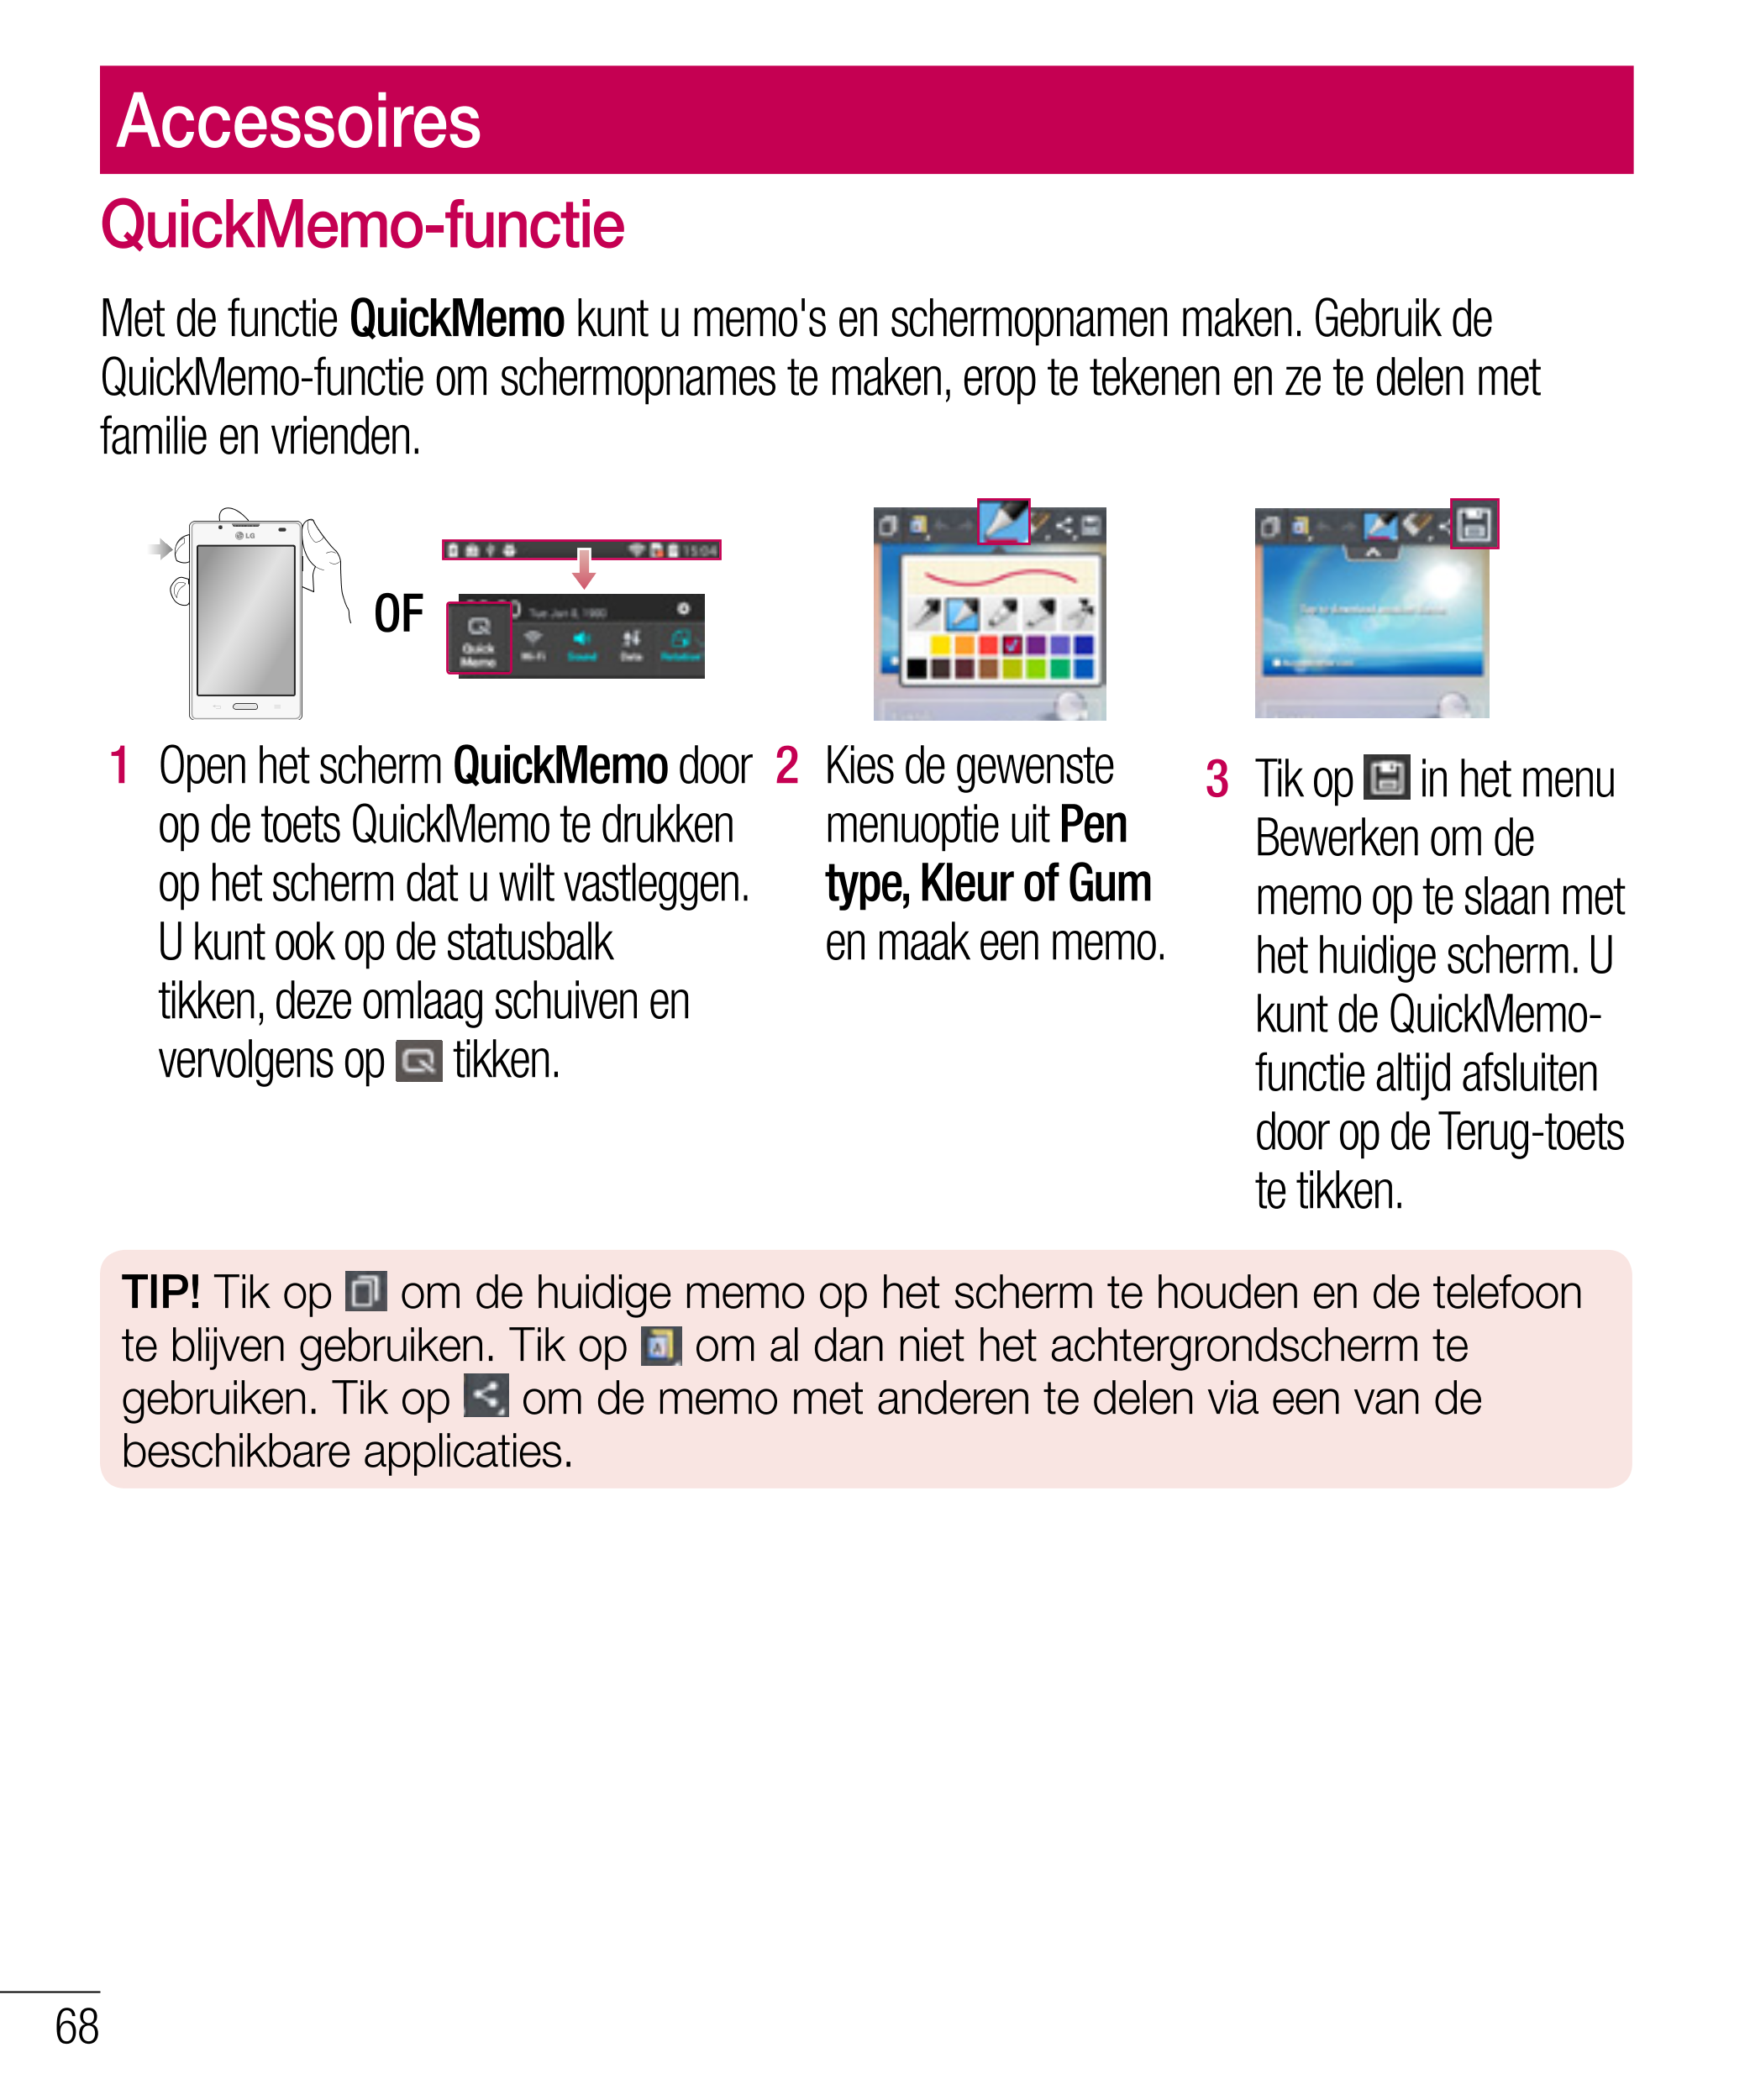 Accessoires
QuickMemo-functie
Met de functie  QuickMemo kunt u memo's en schermopnamen maken. Gebruik de 
QuickMemo-functie om s